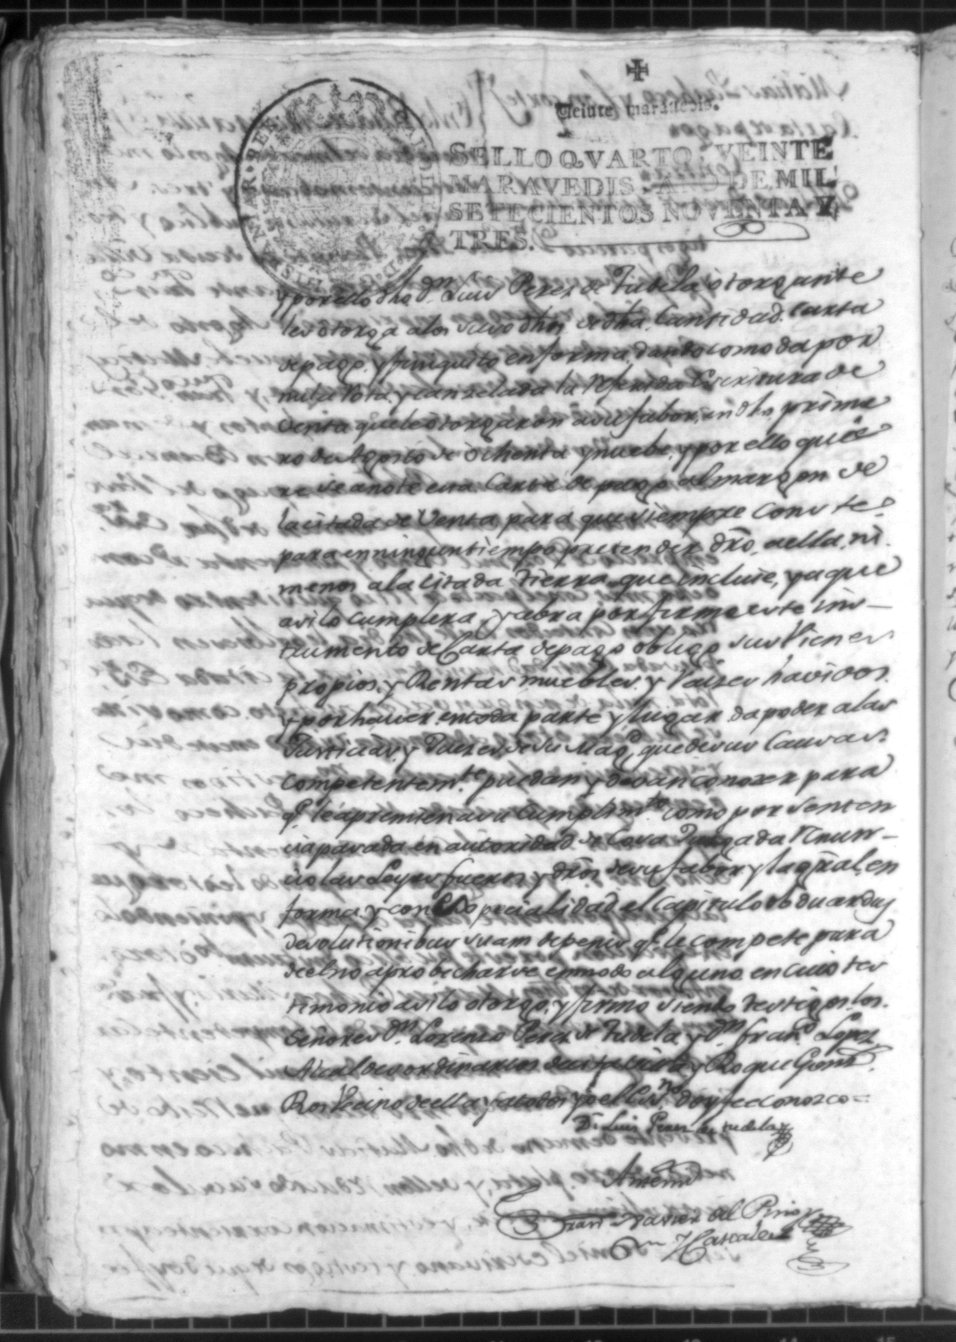 Registro de Francisco Javier del Pino Cascales, Alcantarilla. Año 1793.